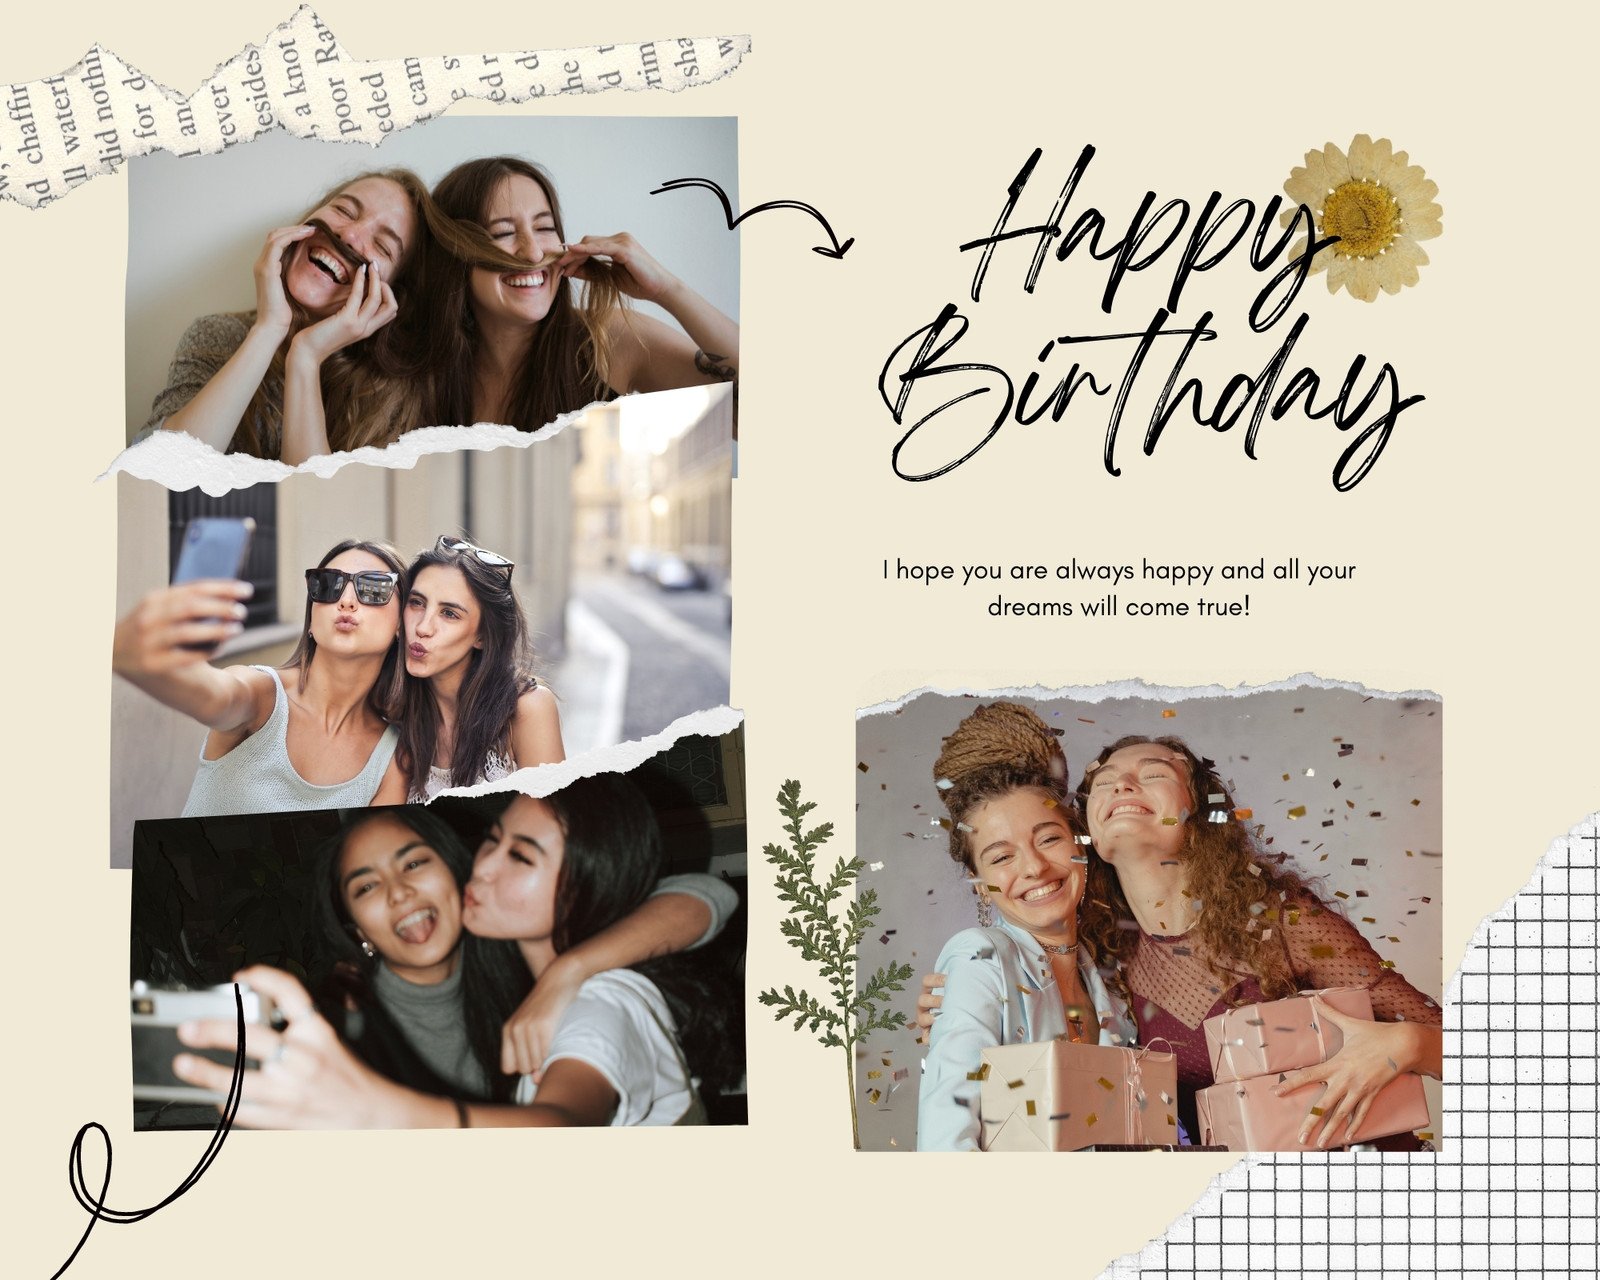 Free, fun birthday photo collage